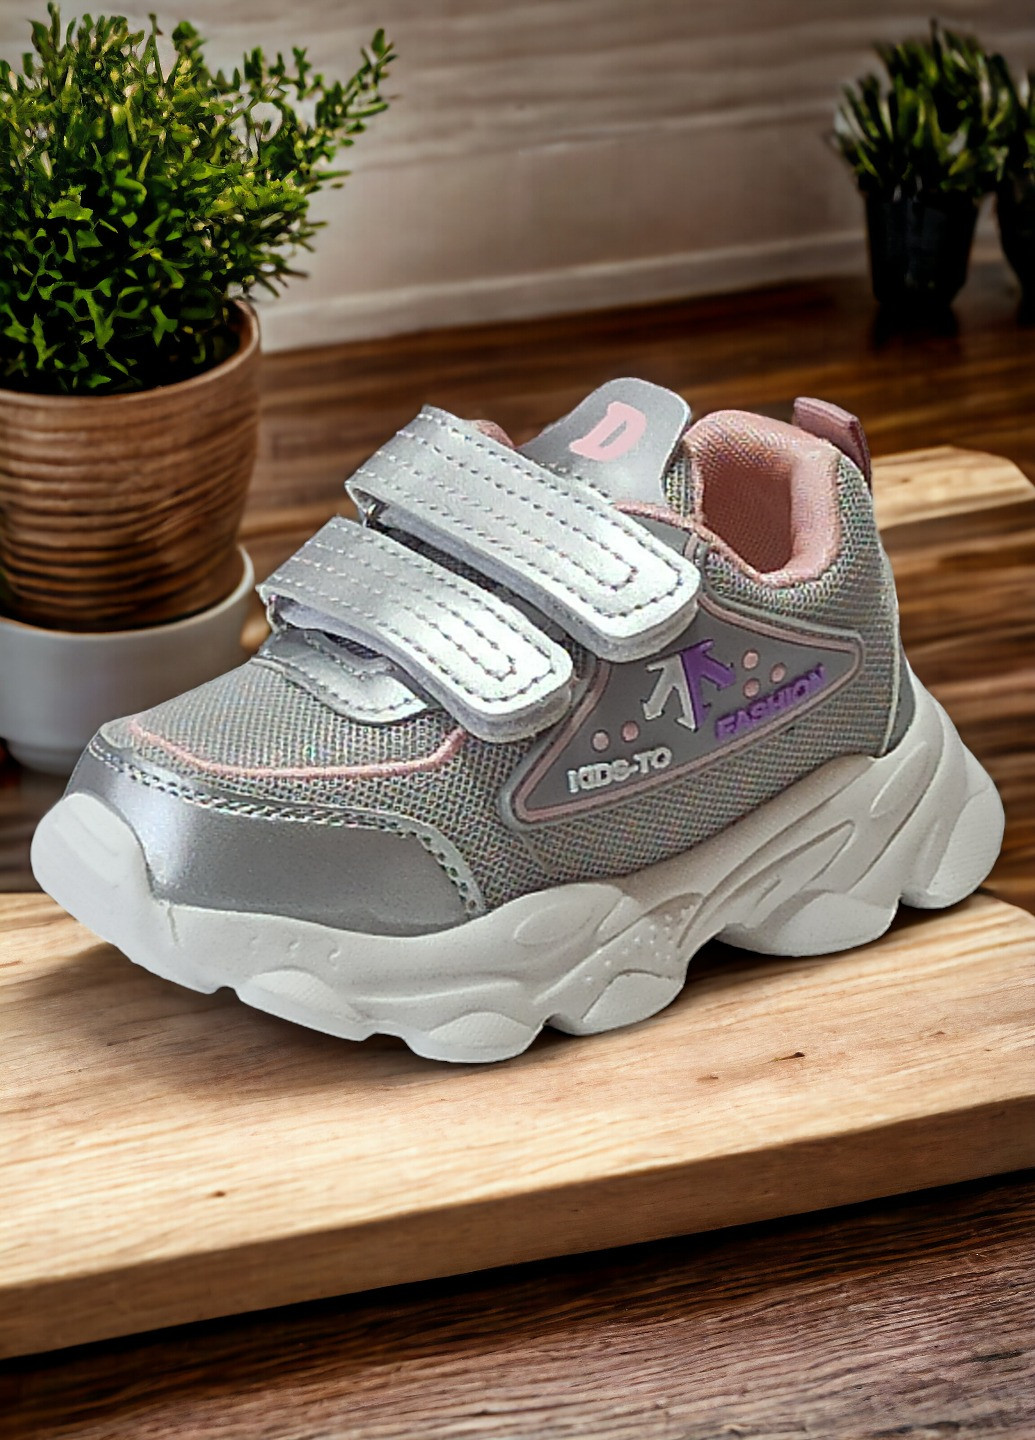 Срібні осінні дитячі кросівки для дівчинки 7502н Boyang